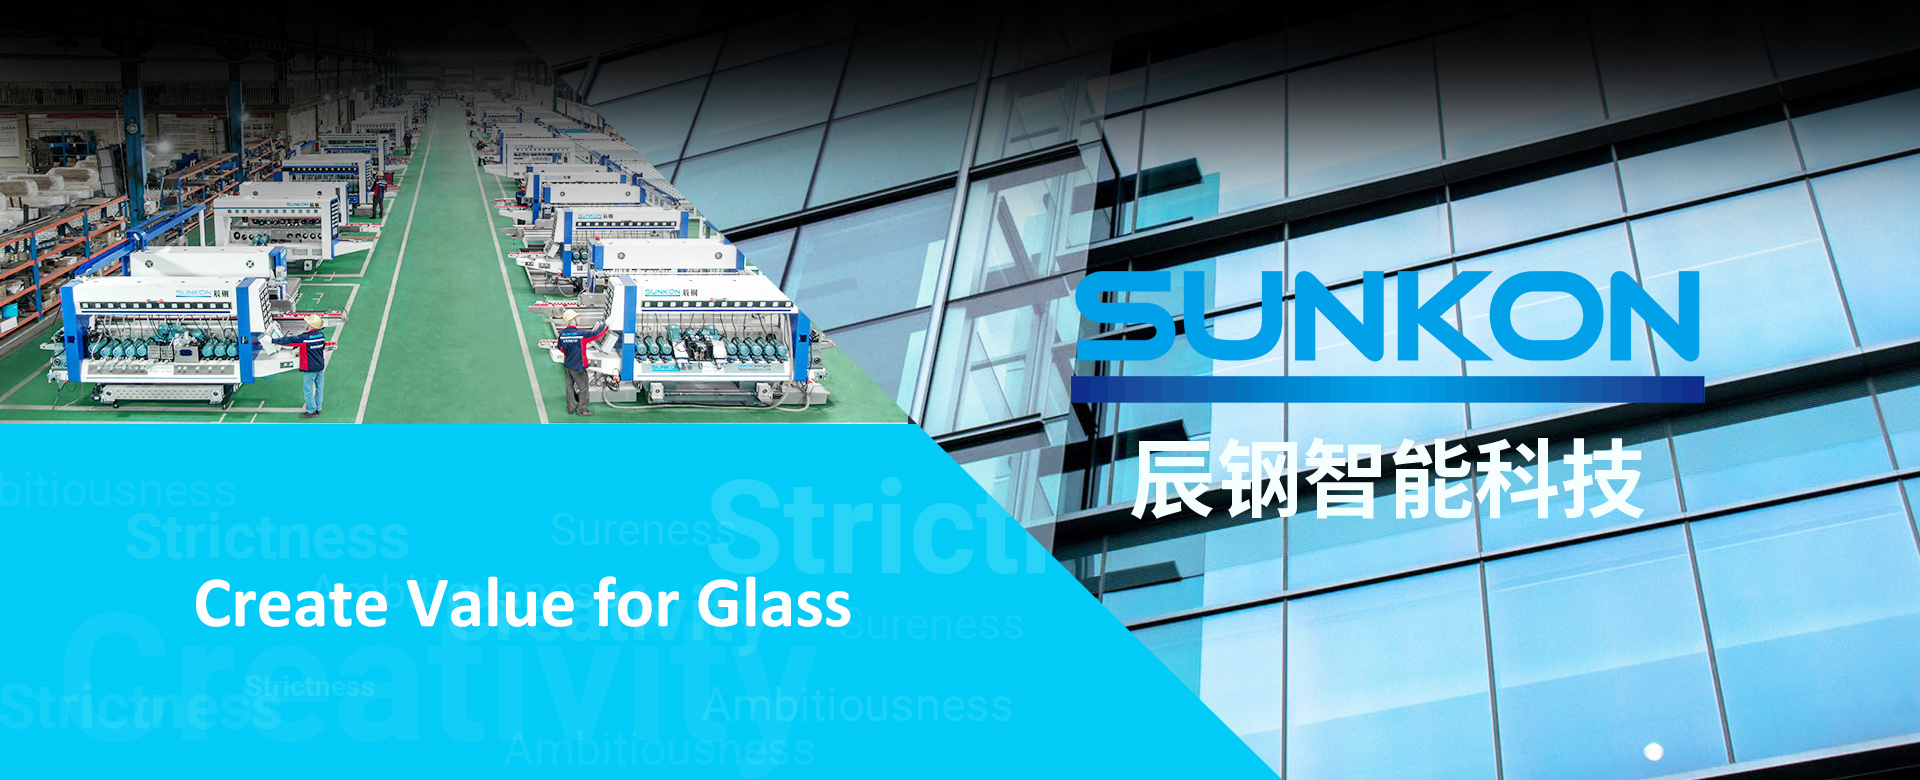 Máquina de vidro SUNKON - banner